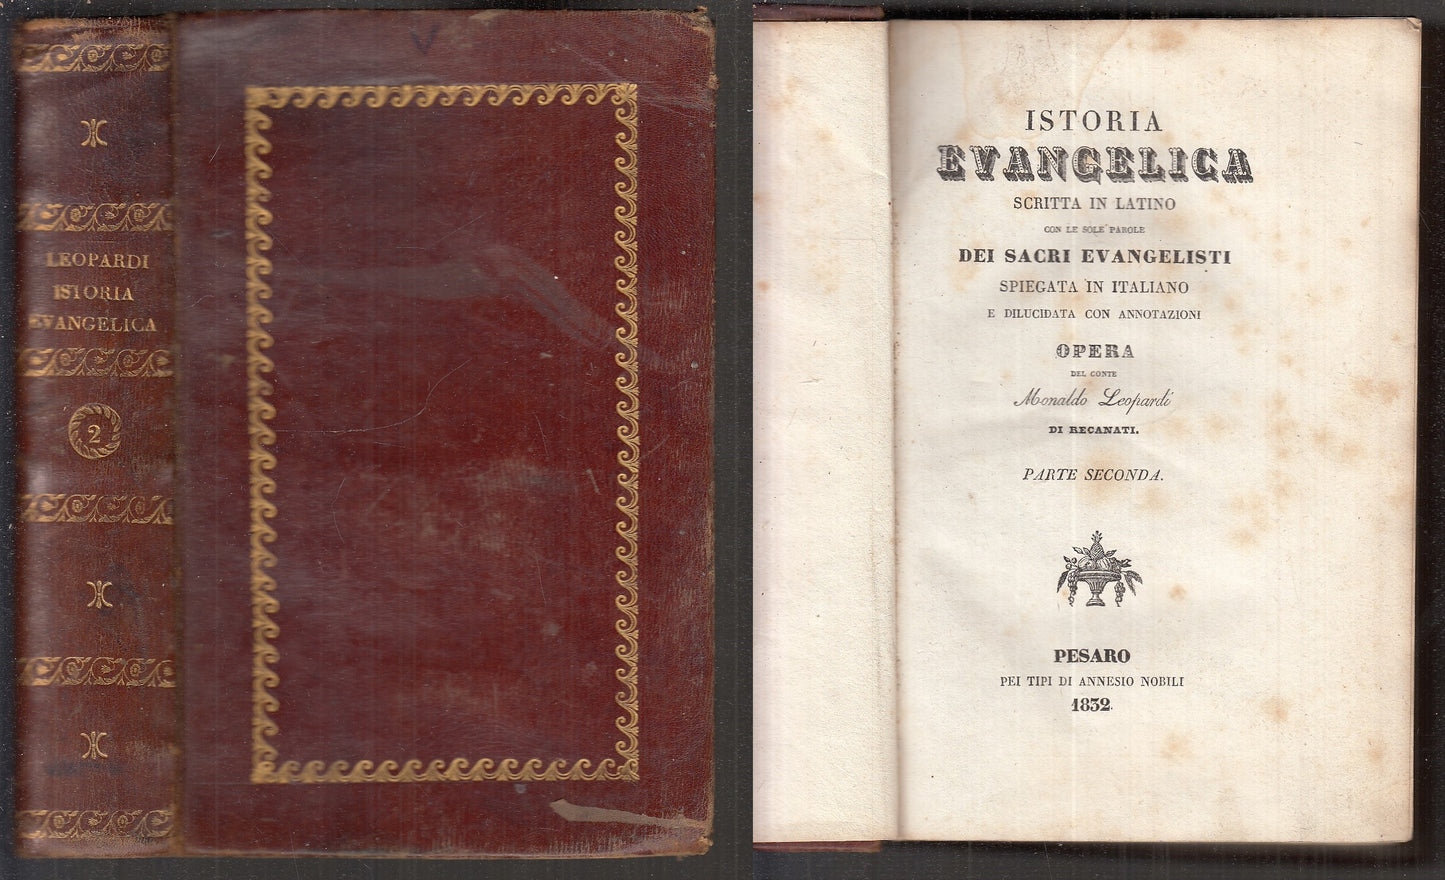 LD- STORIA EVANGELICA - ARNALDO LEOPARDI - ANNESIO NOBILI --- 1832 - C - XFS111